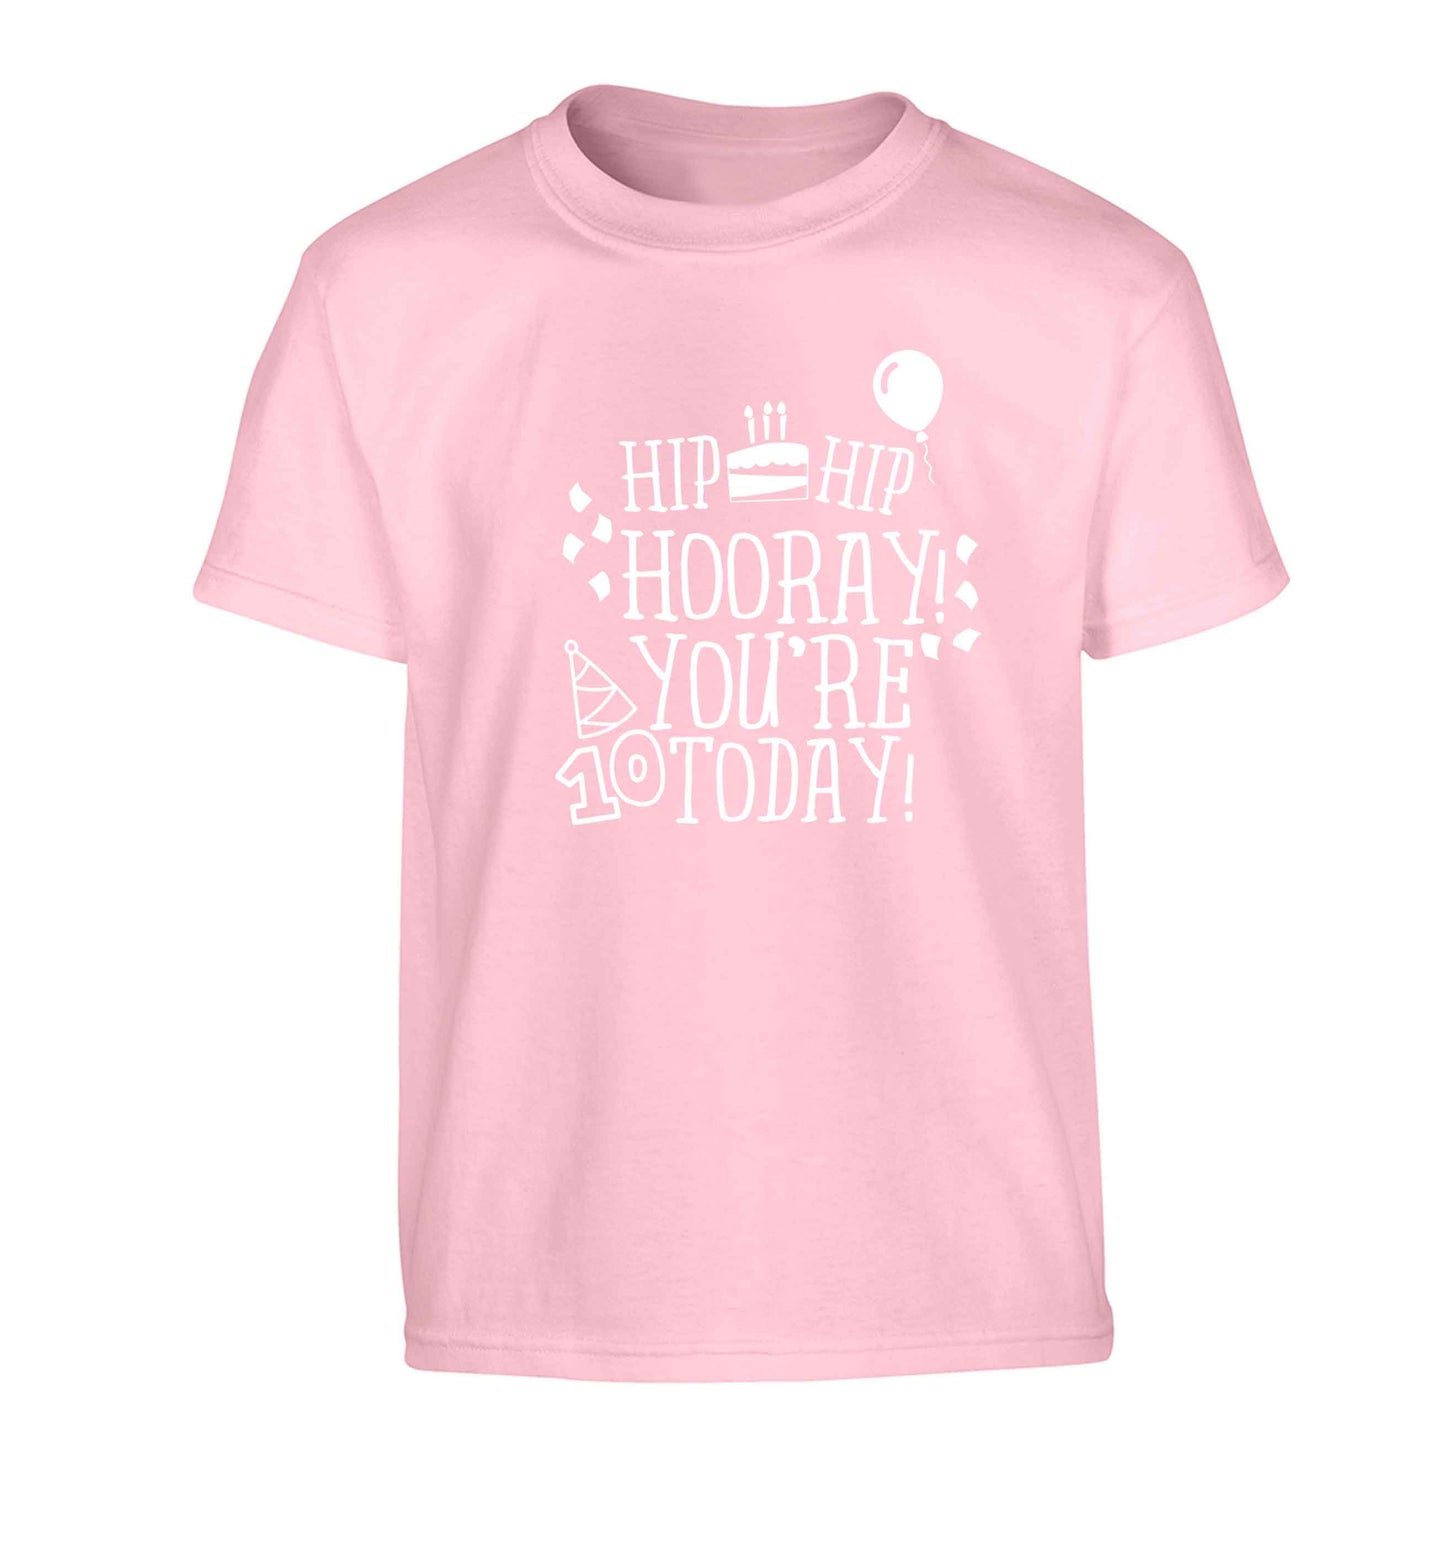 Hip hip hooray you're ten today! Children's light pink Tshirt 12-13 Years